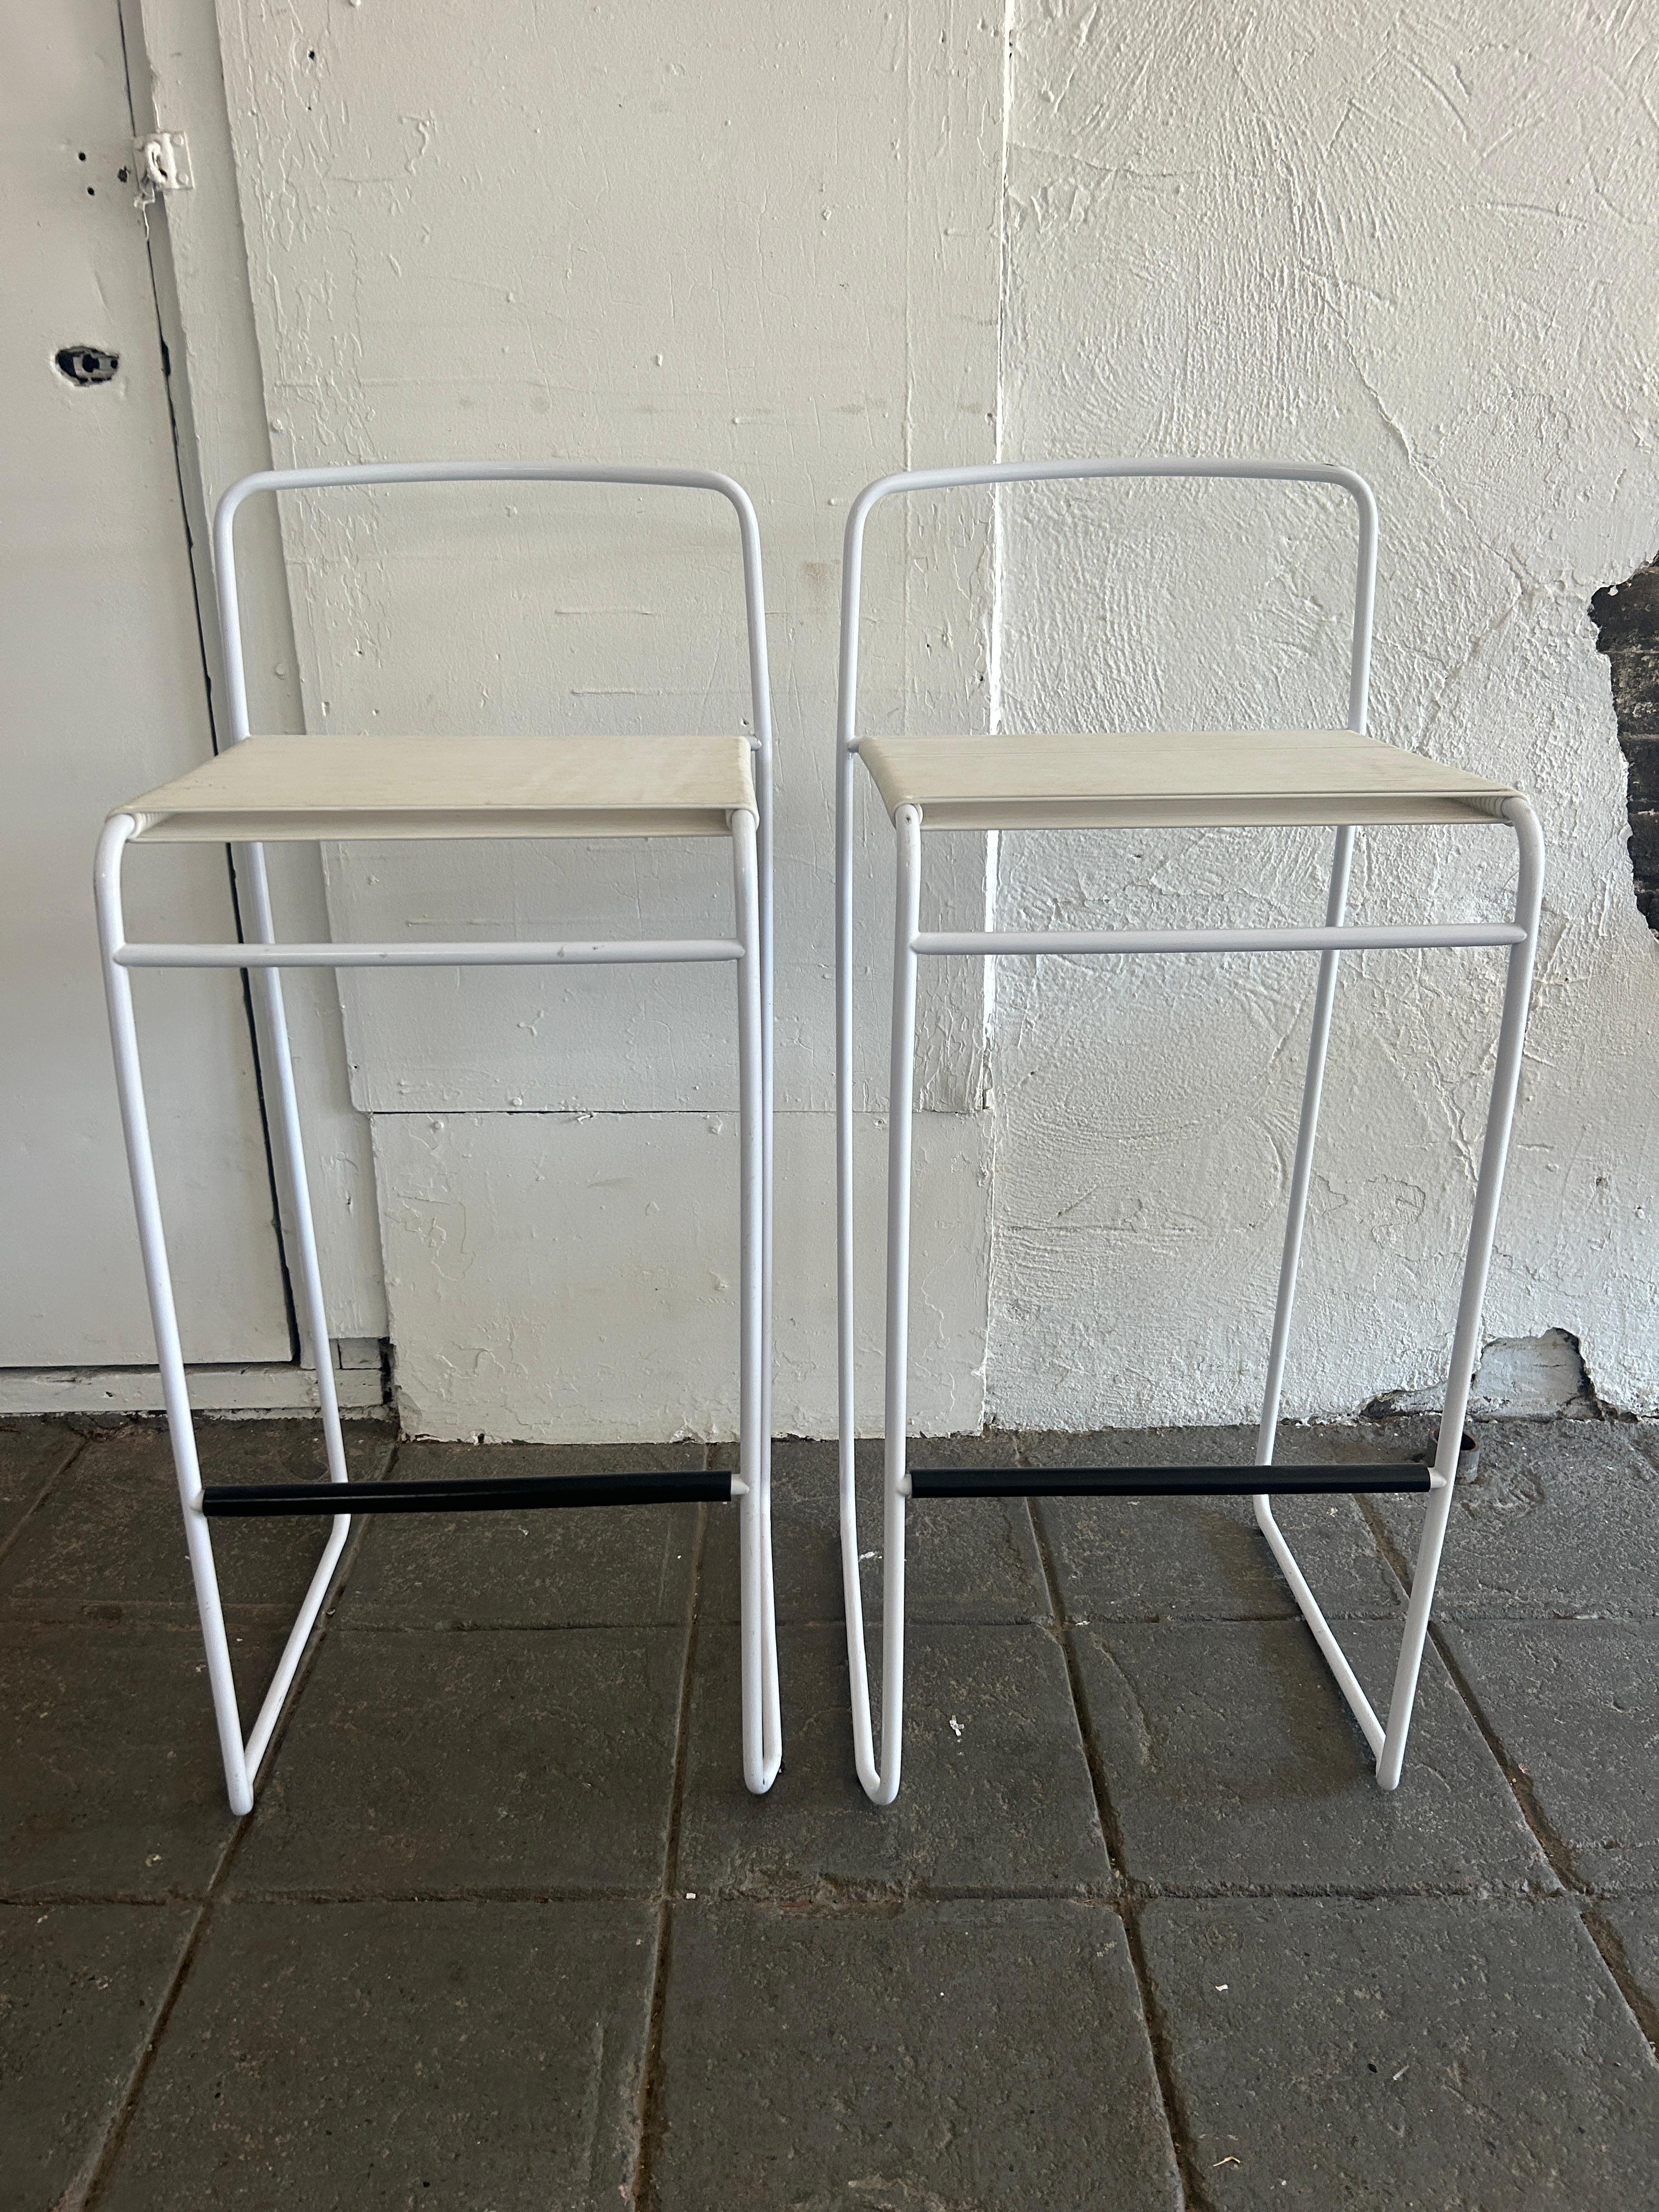 Ein Paar postmoderne Barhocker aus weiß emailliertem Metall mit Spaghetti-Cord-Sitzen, entworfen von Giandomenico Belotti für Fly Line. guter Zustand. Liegt in Brooklyn NYC 

Abmessungen: H 37